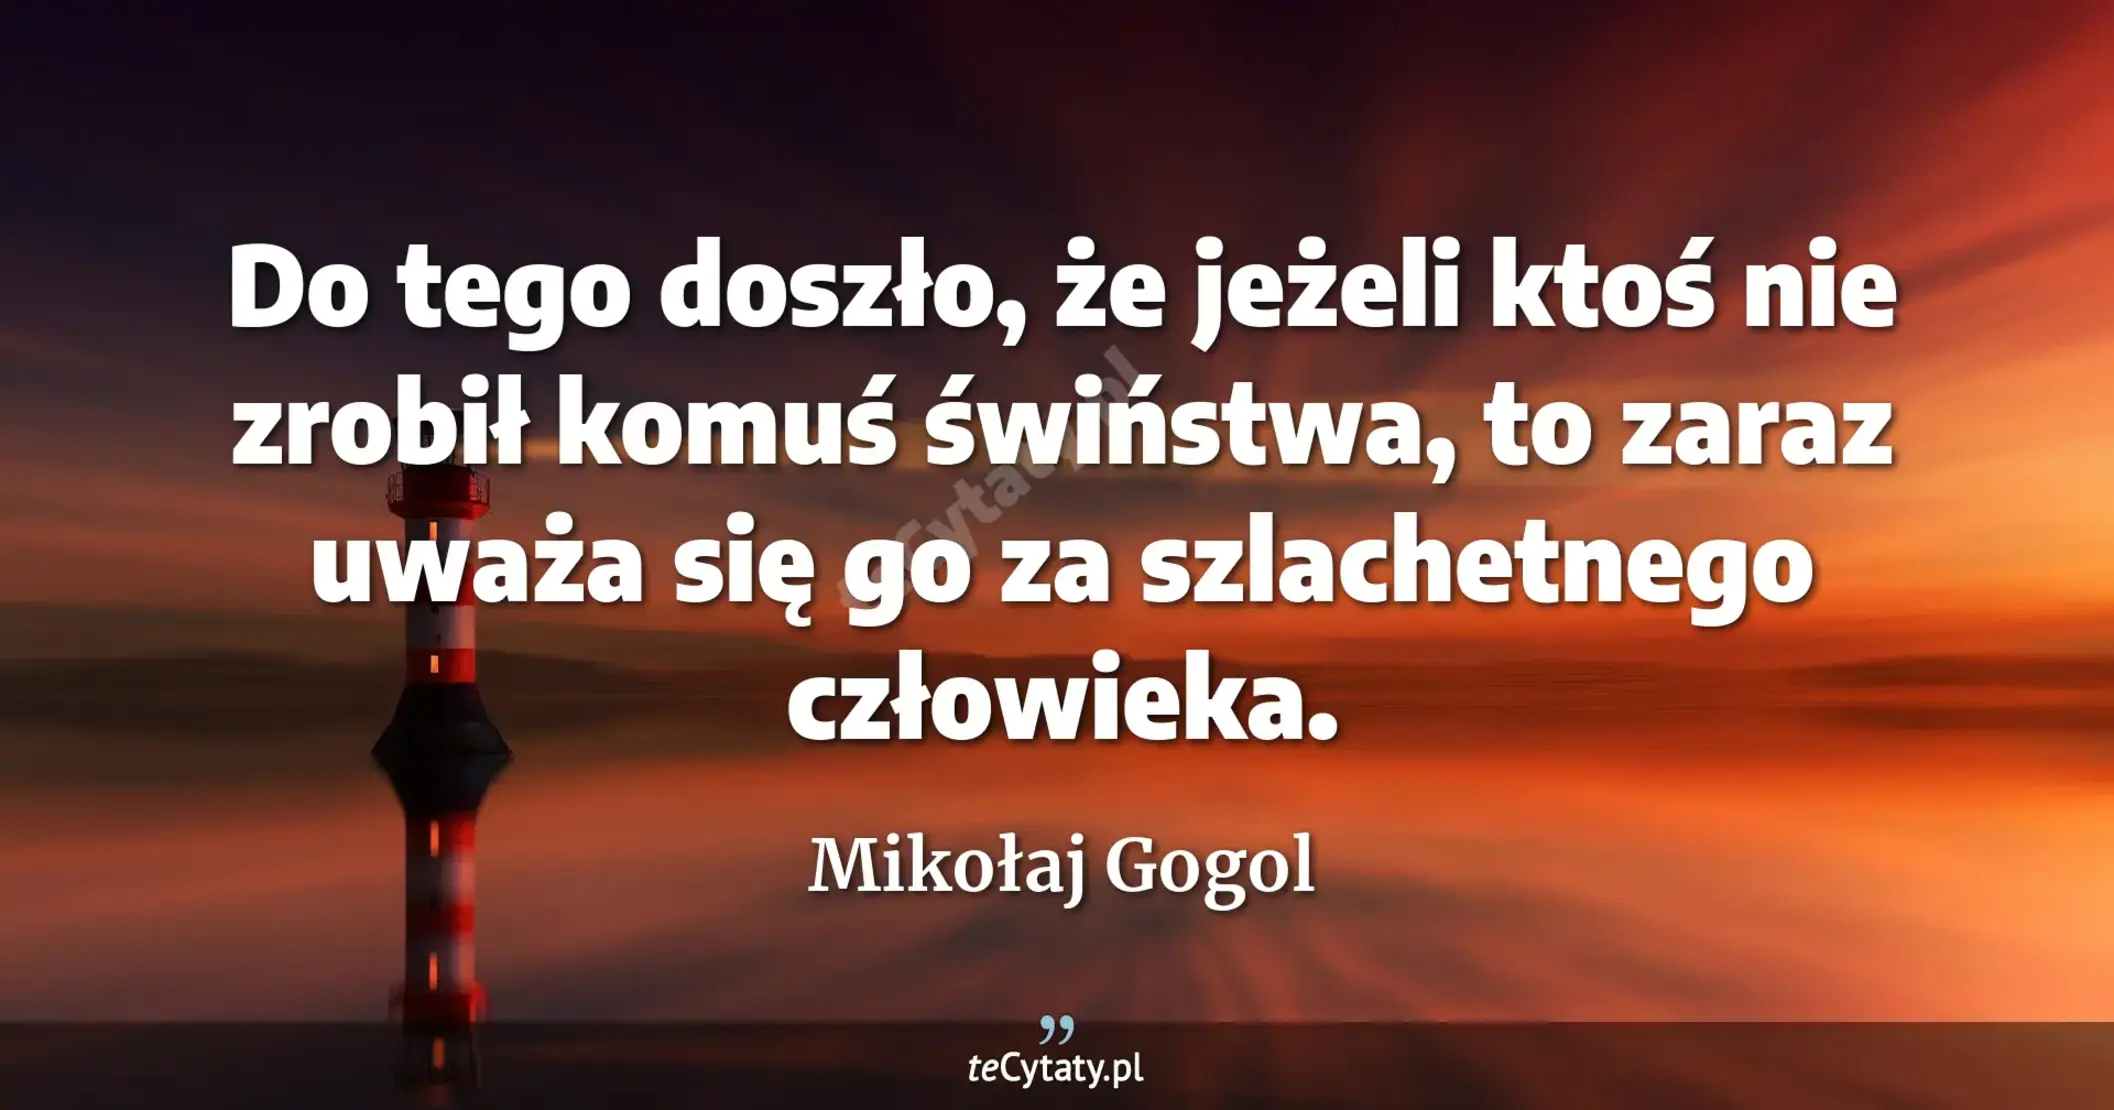 Do tego doszło, że jeżeli ktoś nie zrobił komuś świństwa, to zaraz uważa się go za szlachetnego człowieka. - Mikołaj Gogol